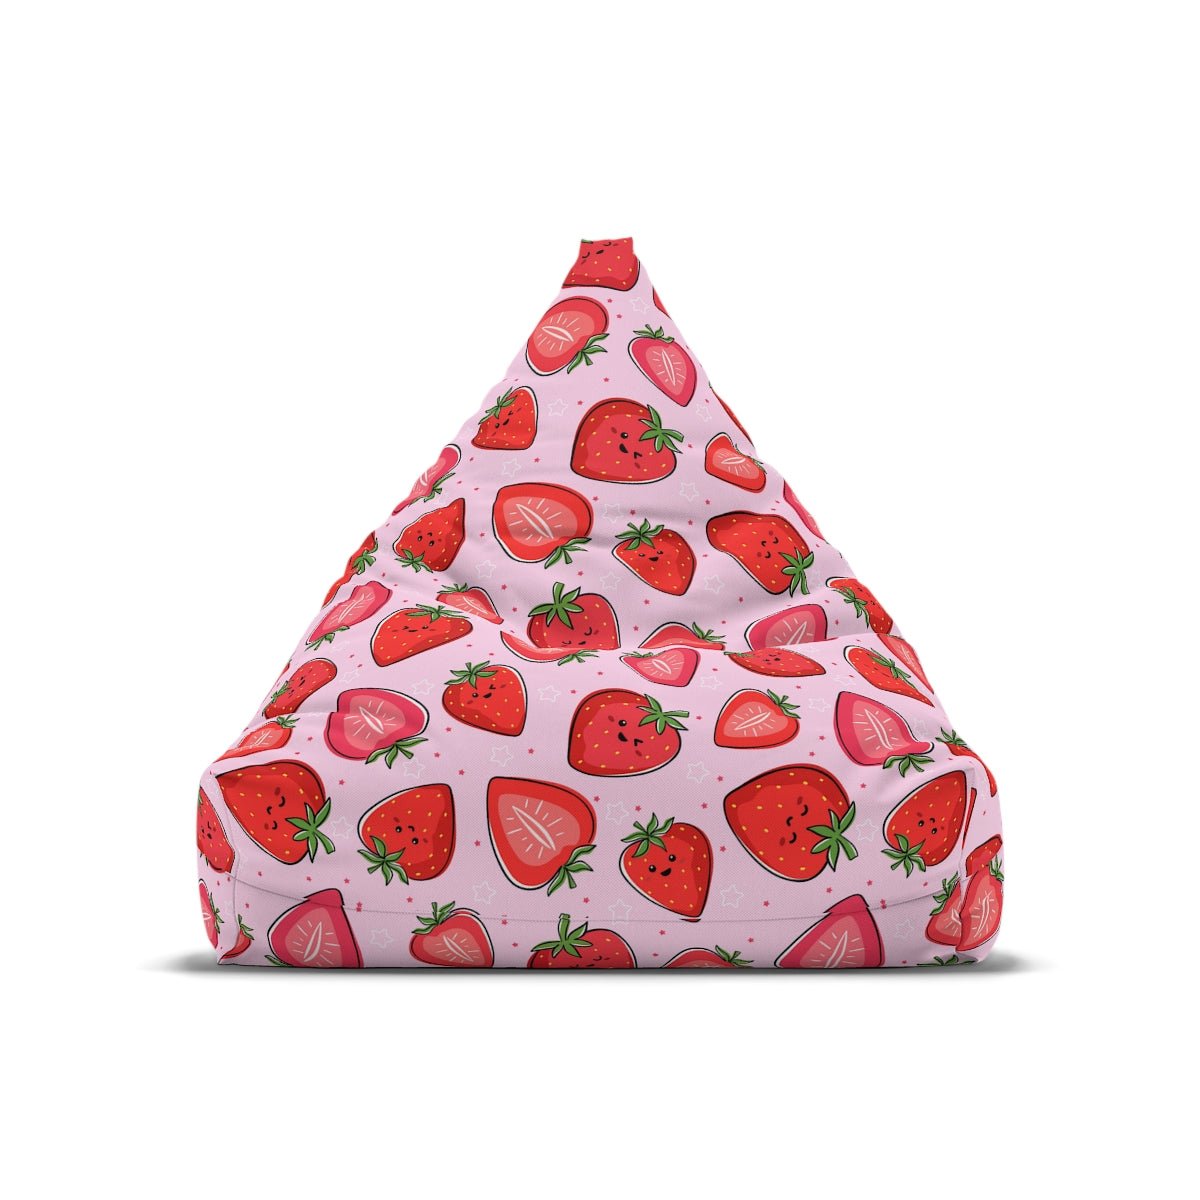 Kawaii Strawberries Bean Bag Chair Cover - Puffin Lime